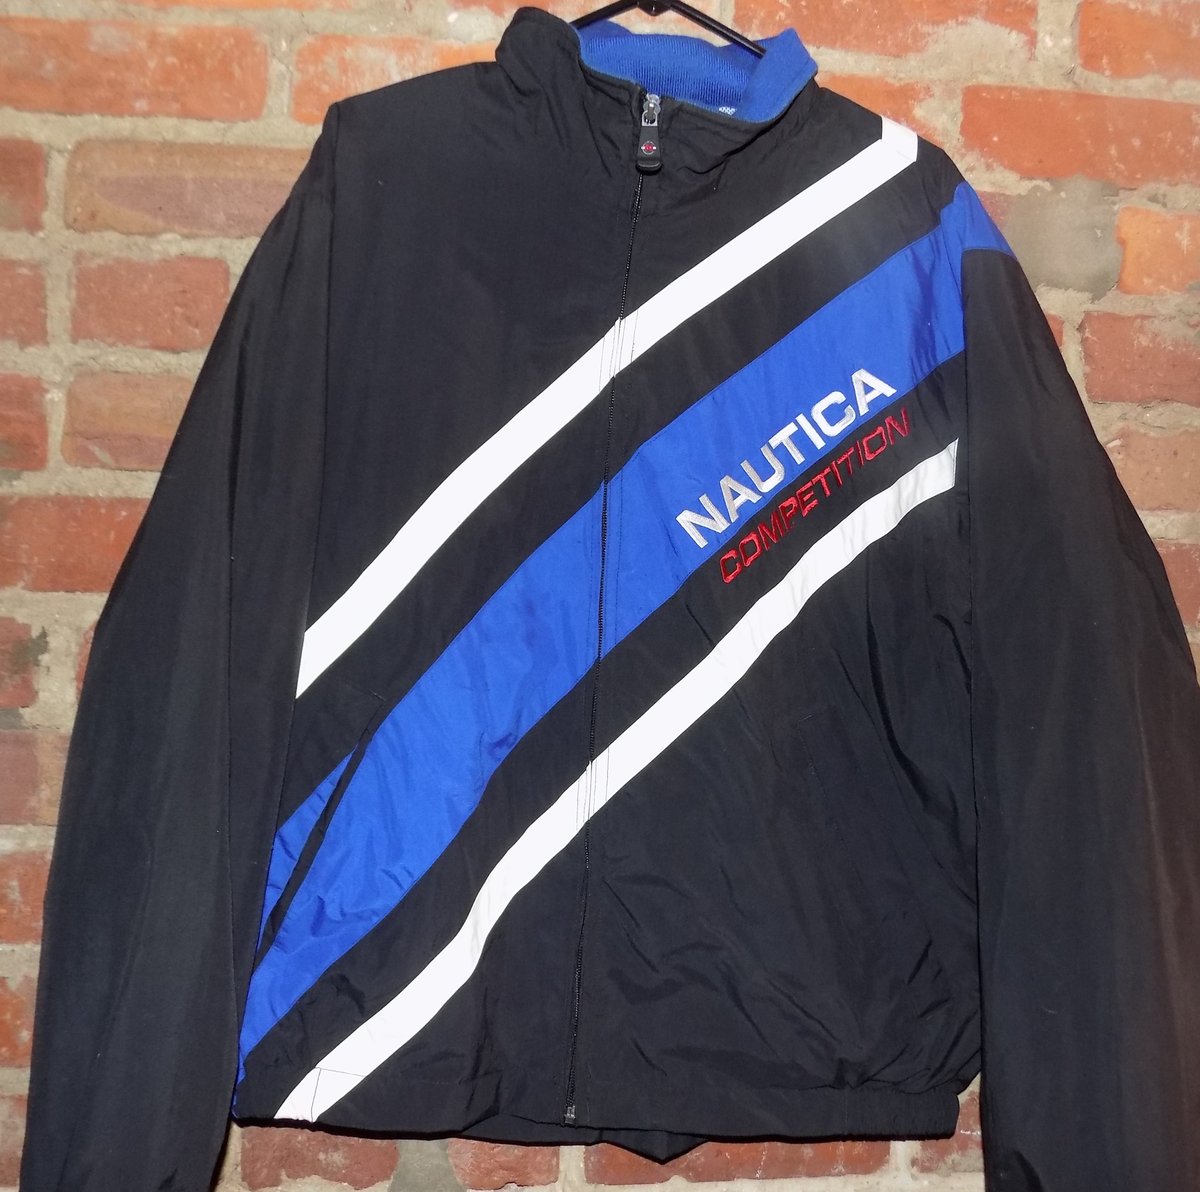 Vintage Nautica competition jacket / R3vivE